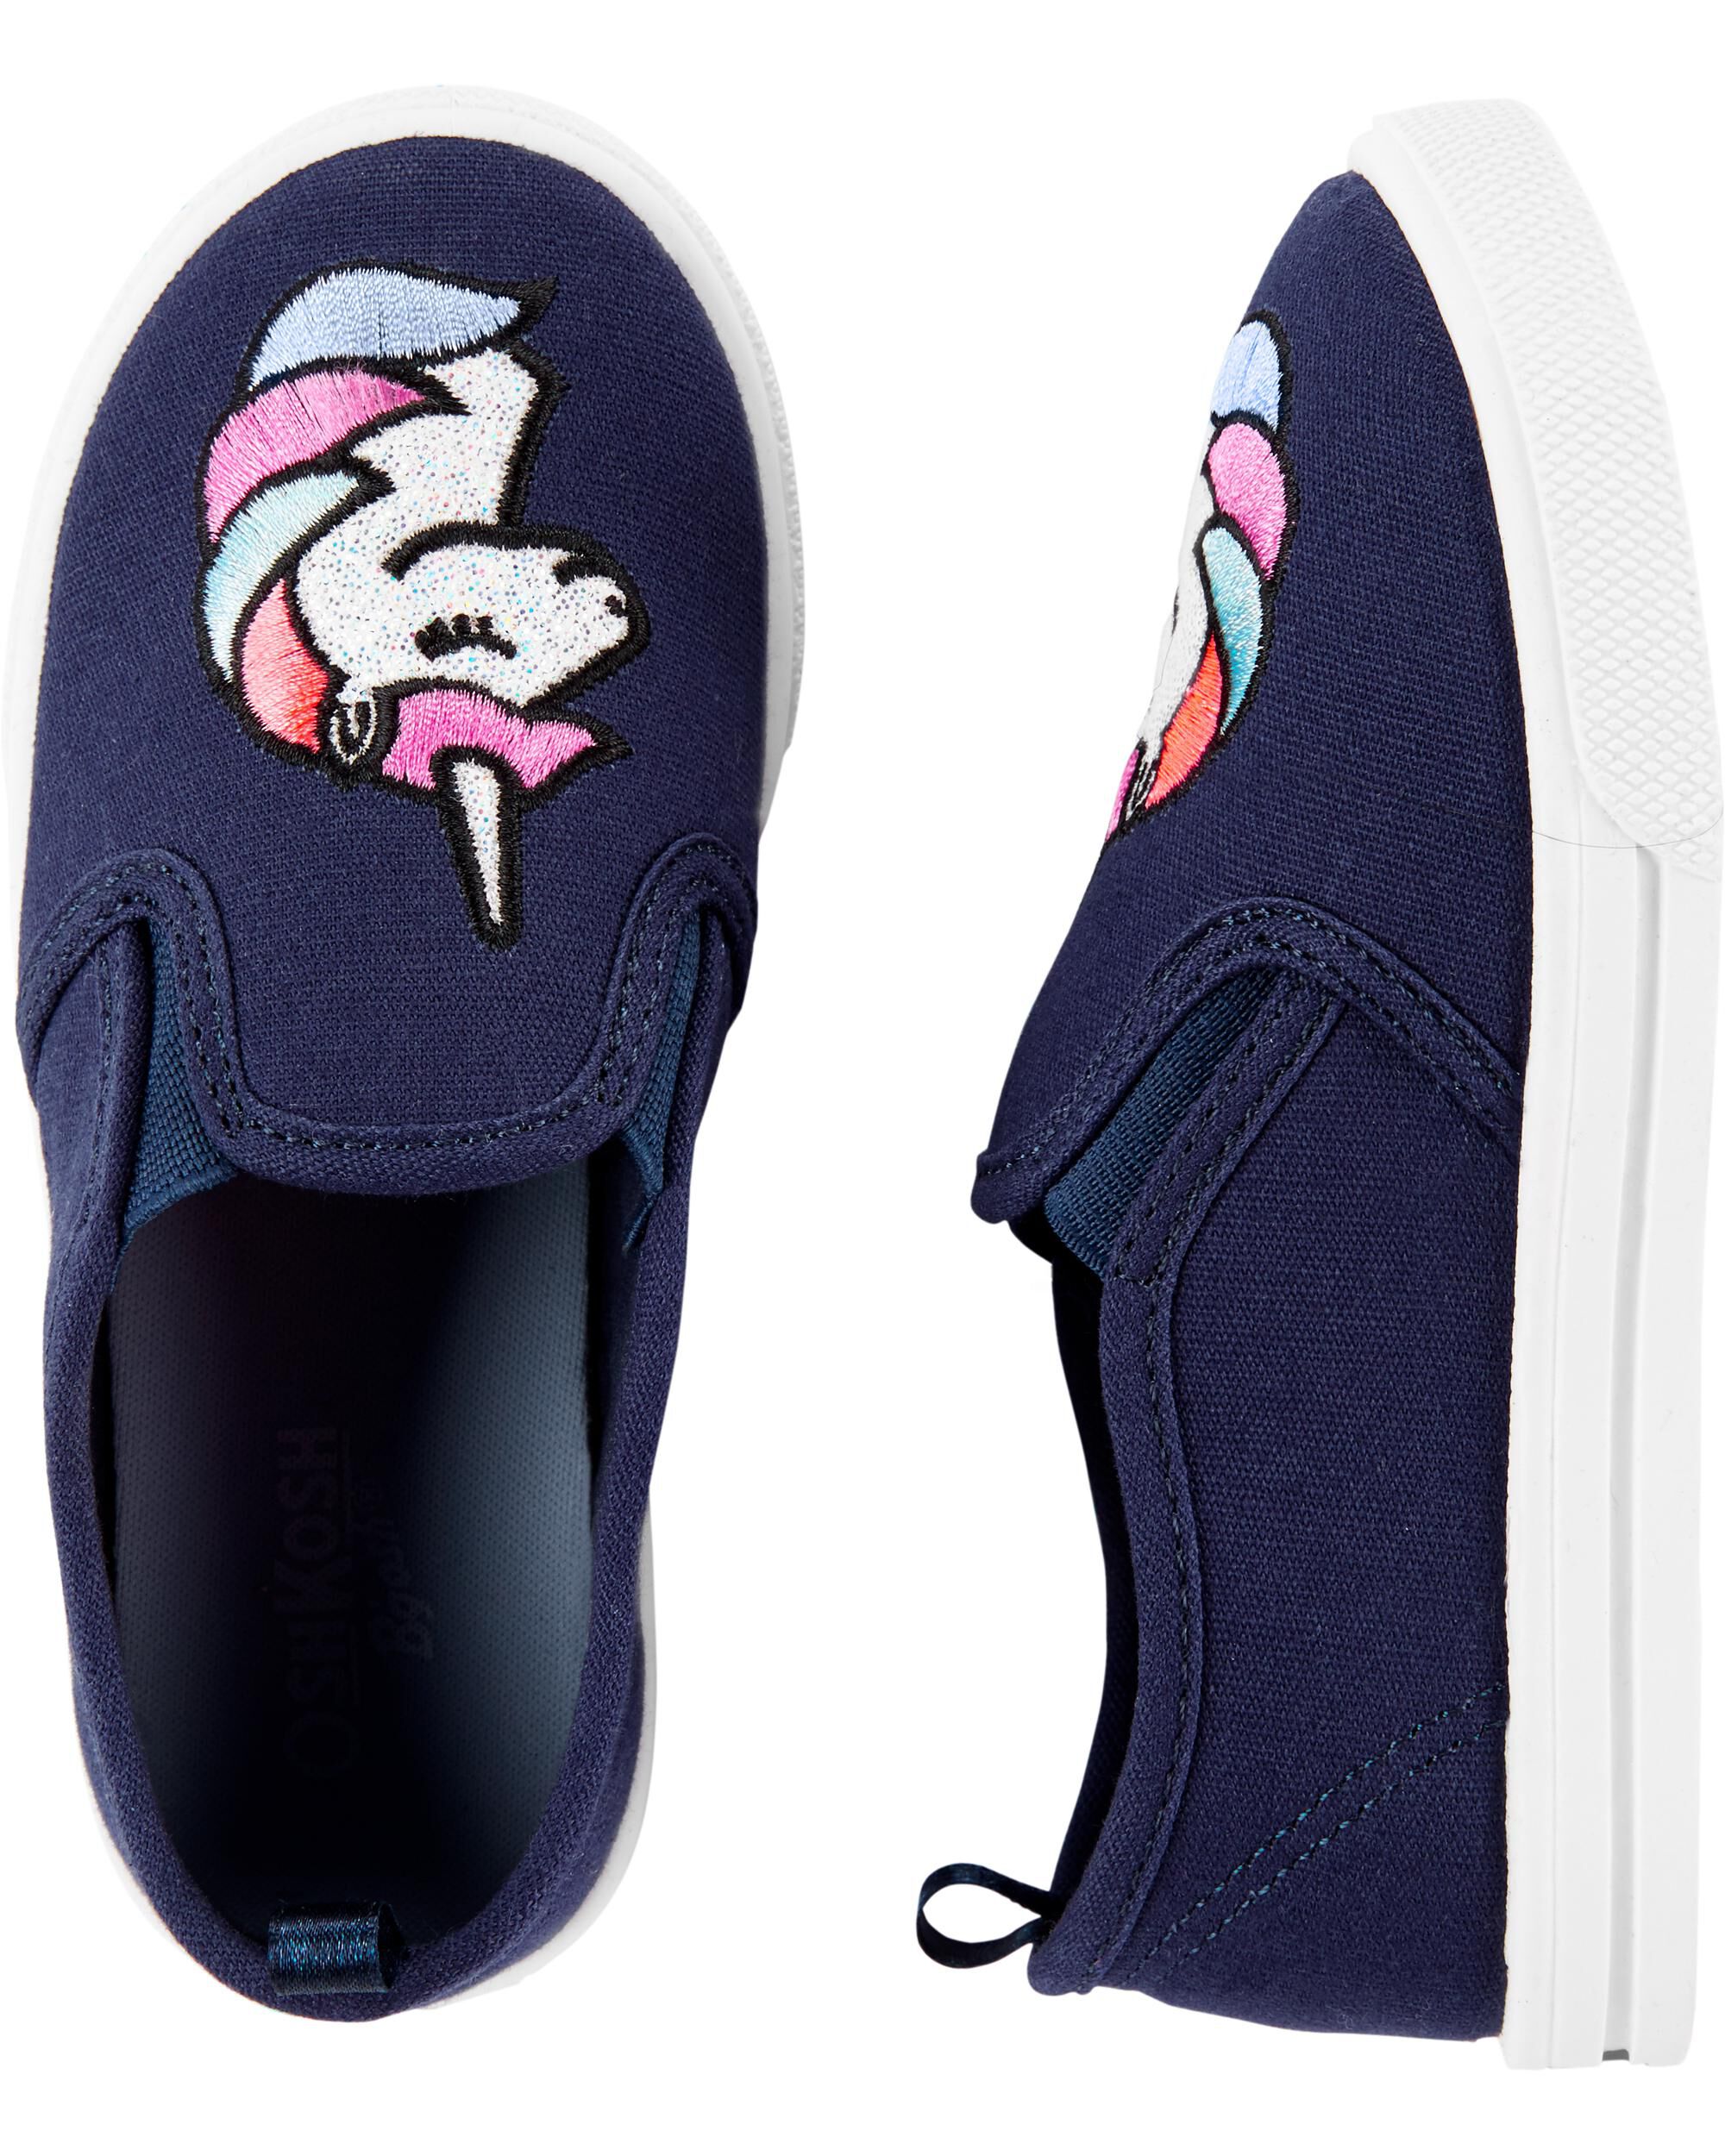 unicorn slip on shoes